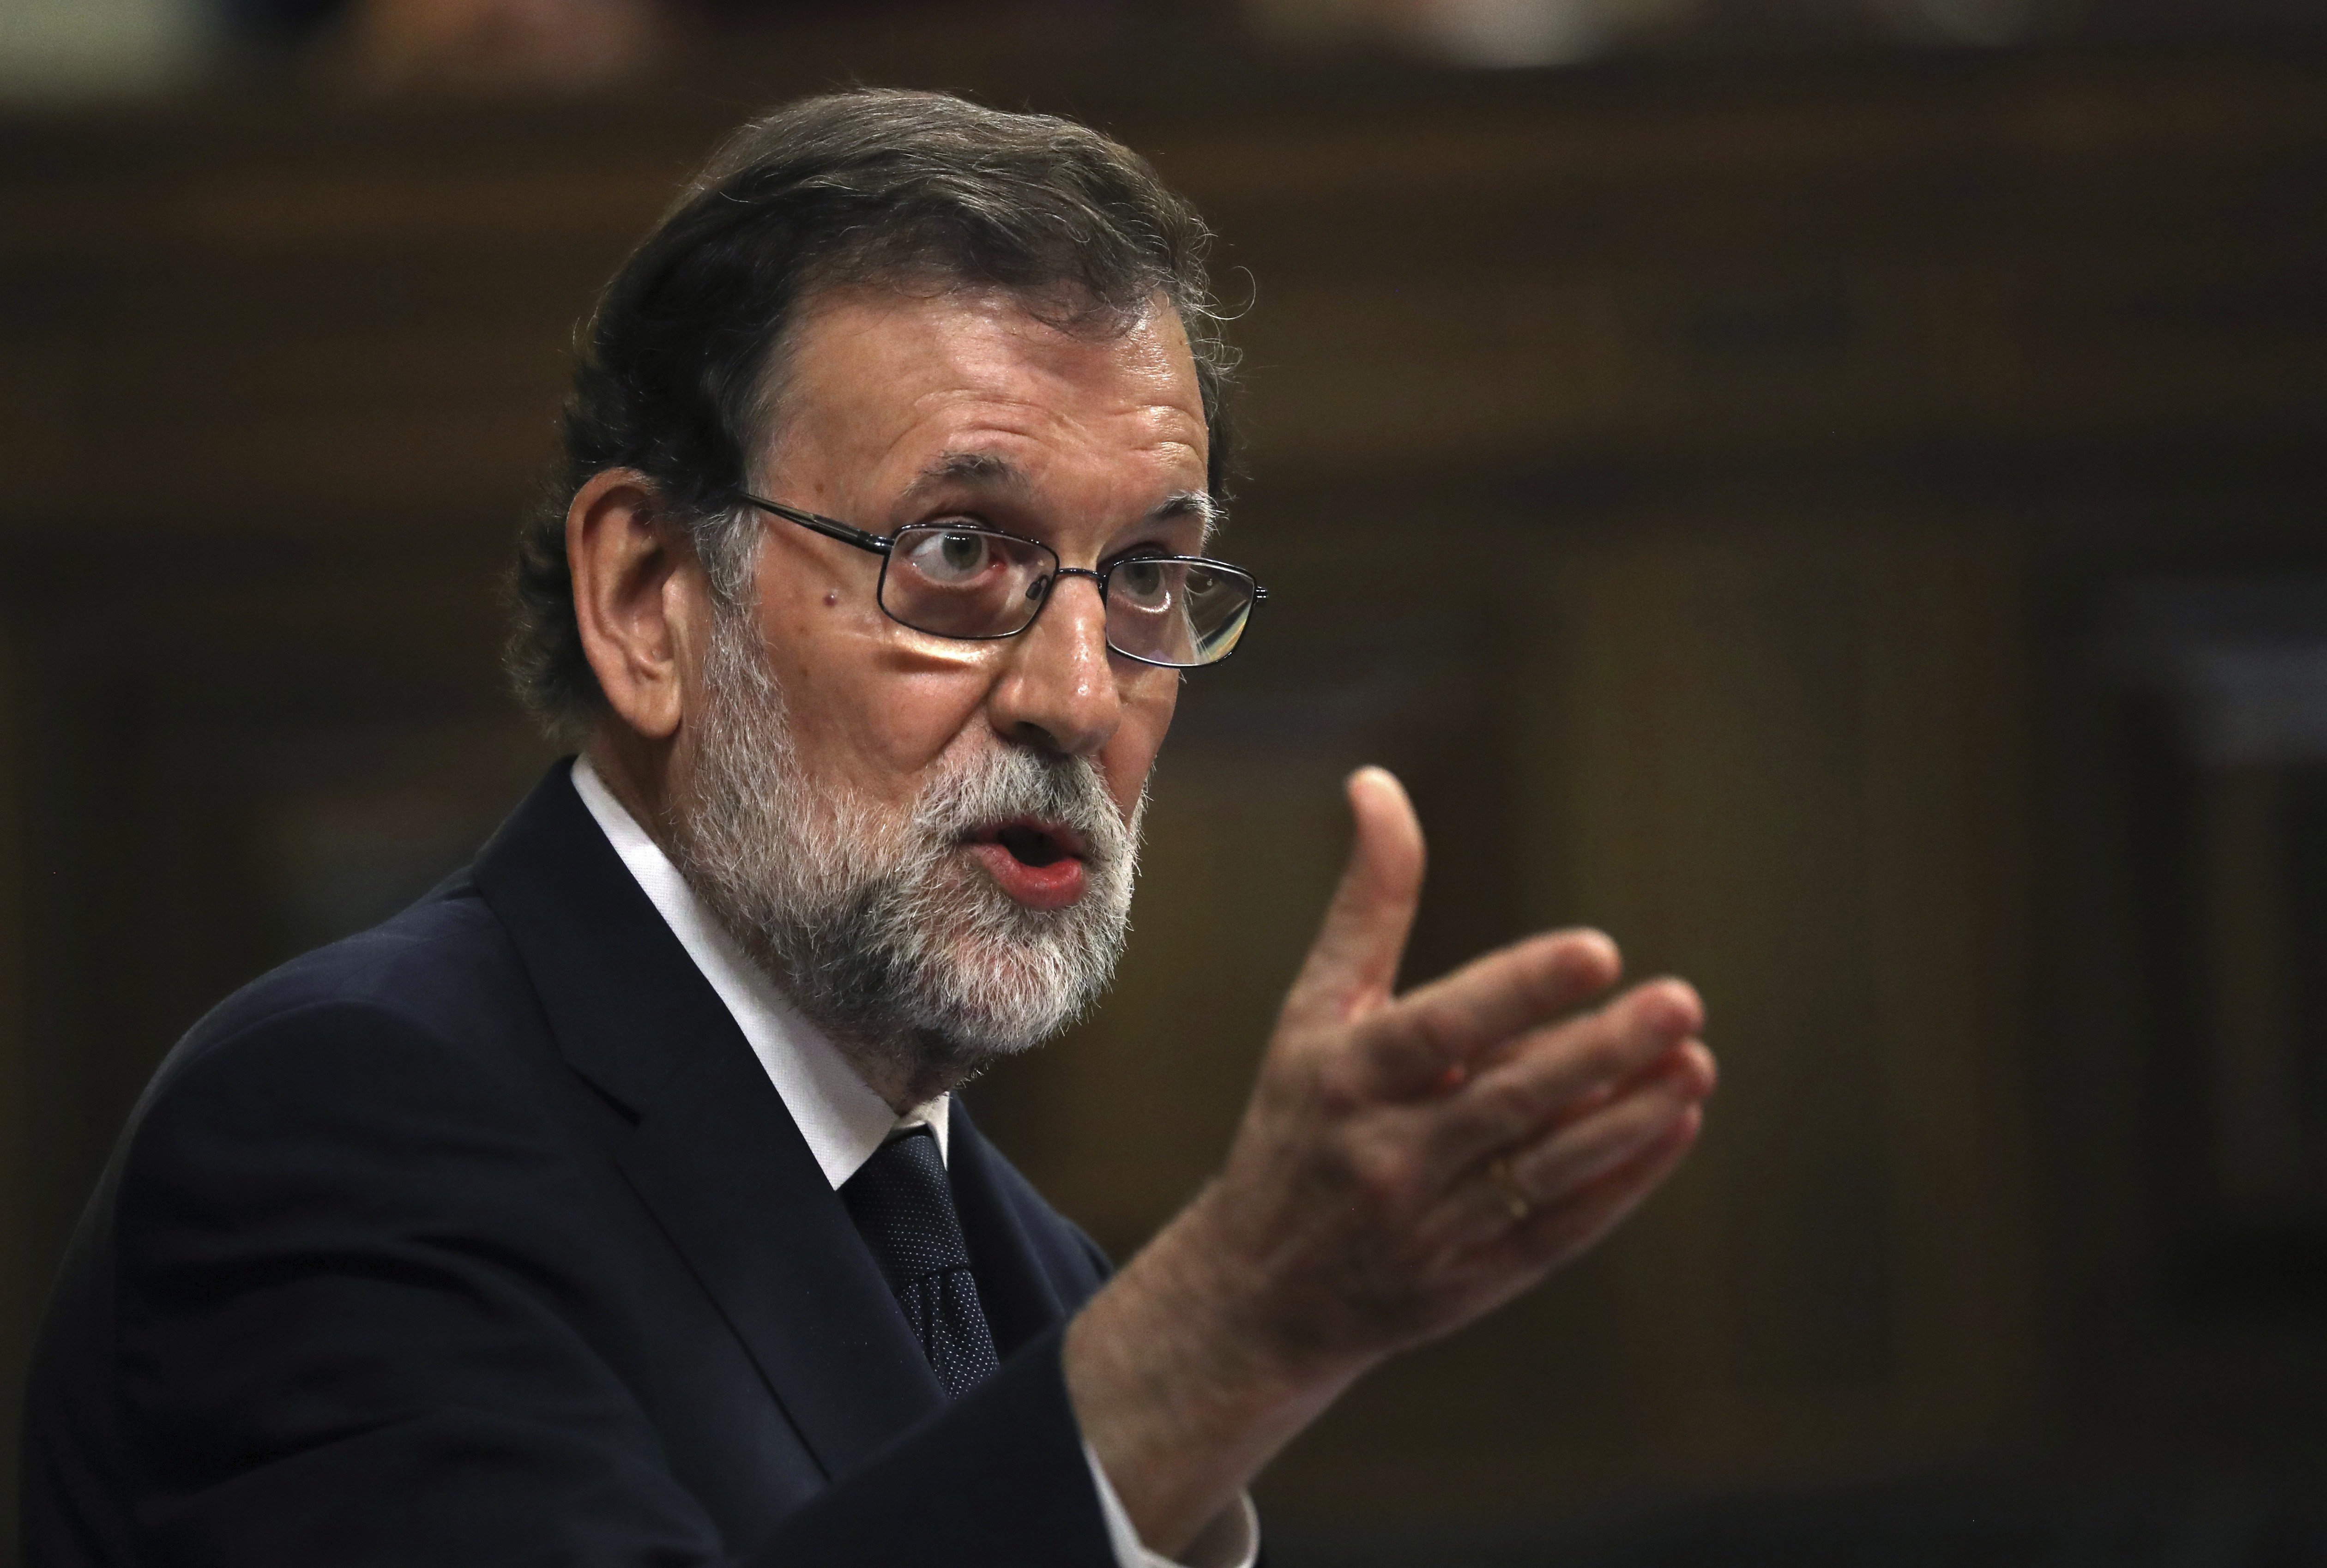 El Estado vuelve a rechazar que Puigdemont se explique en el Congreso sin votación